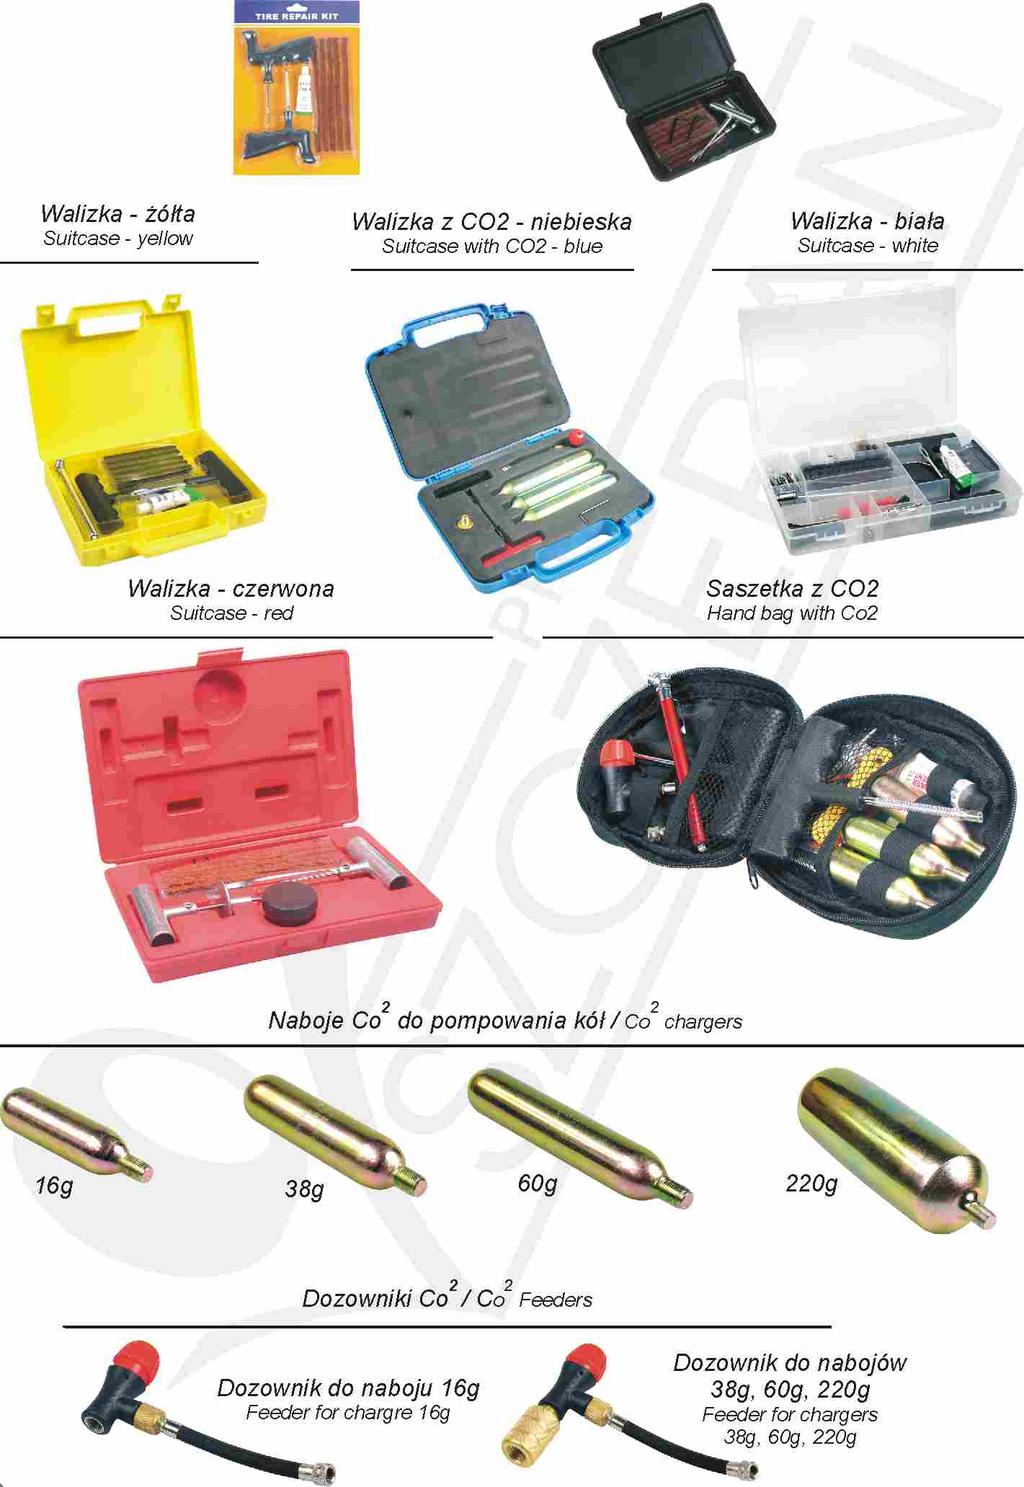 Zestawy naprawcze / Repair kits Walizka - żółta Suitcase - yellow 02-02-47 Blister Walizka z CO2 - niebieska Suitcase with CO2 - blue Walizka - czarna Suitcase - black 02-02-69 02-02-71 02-02-44